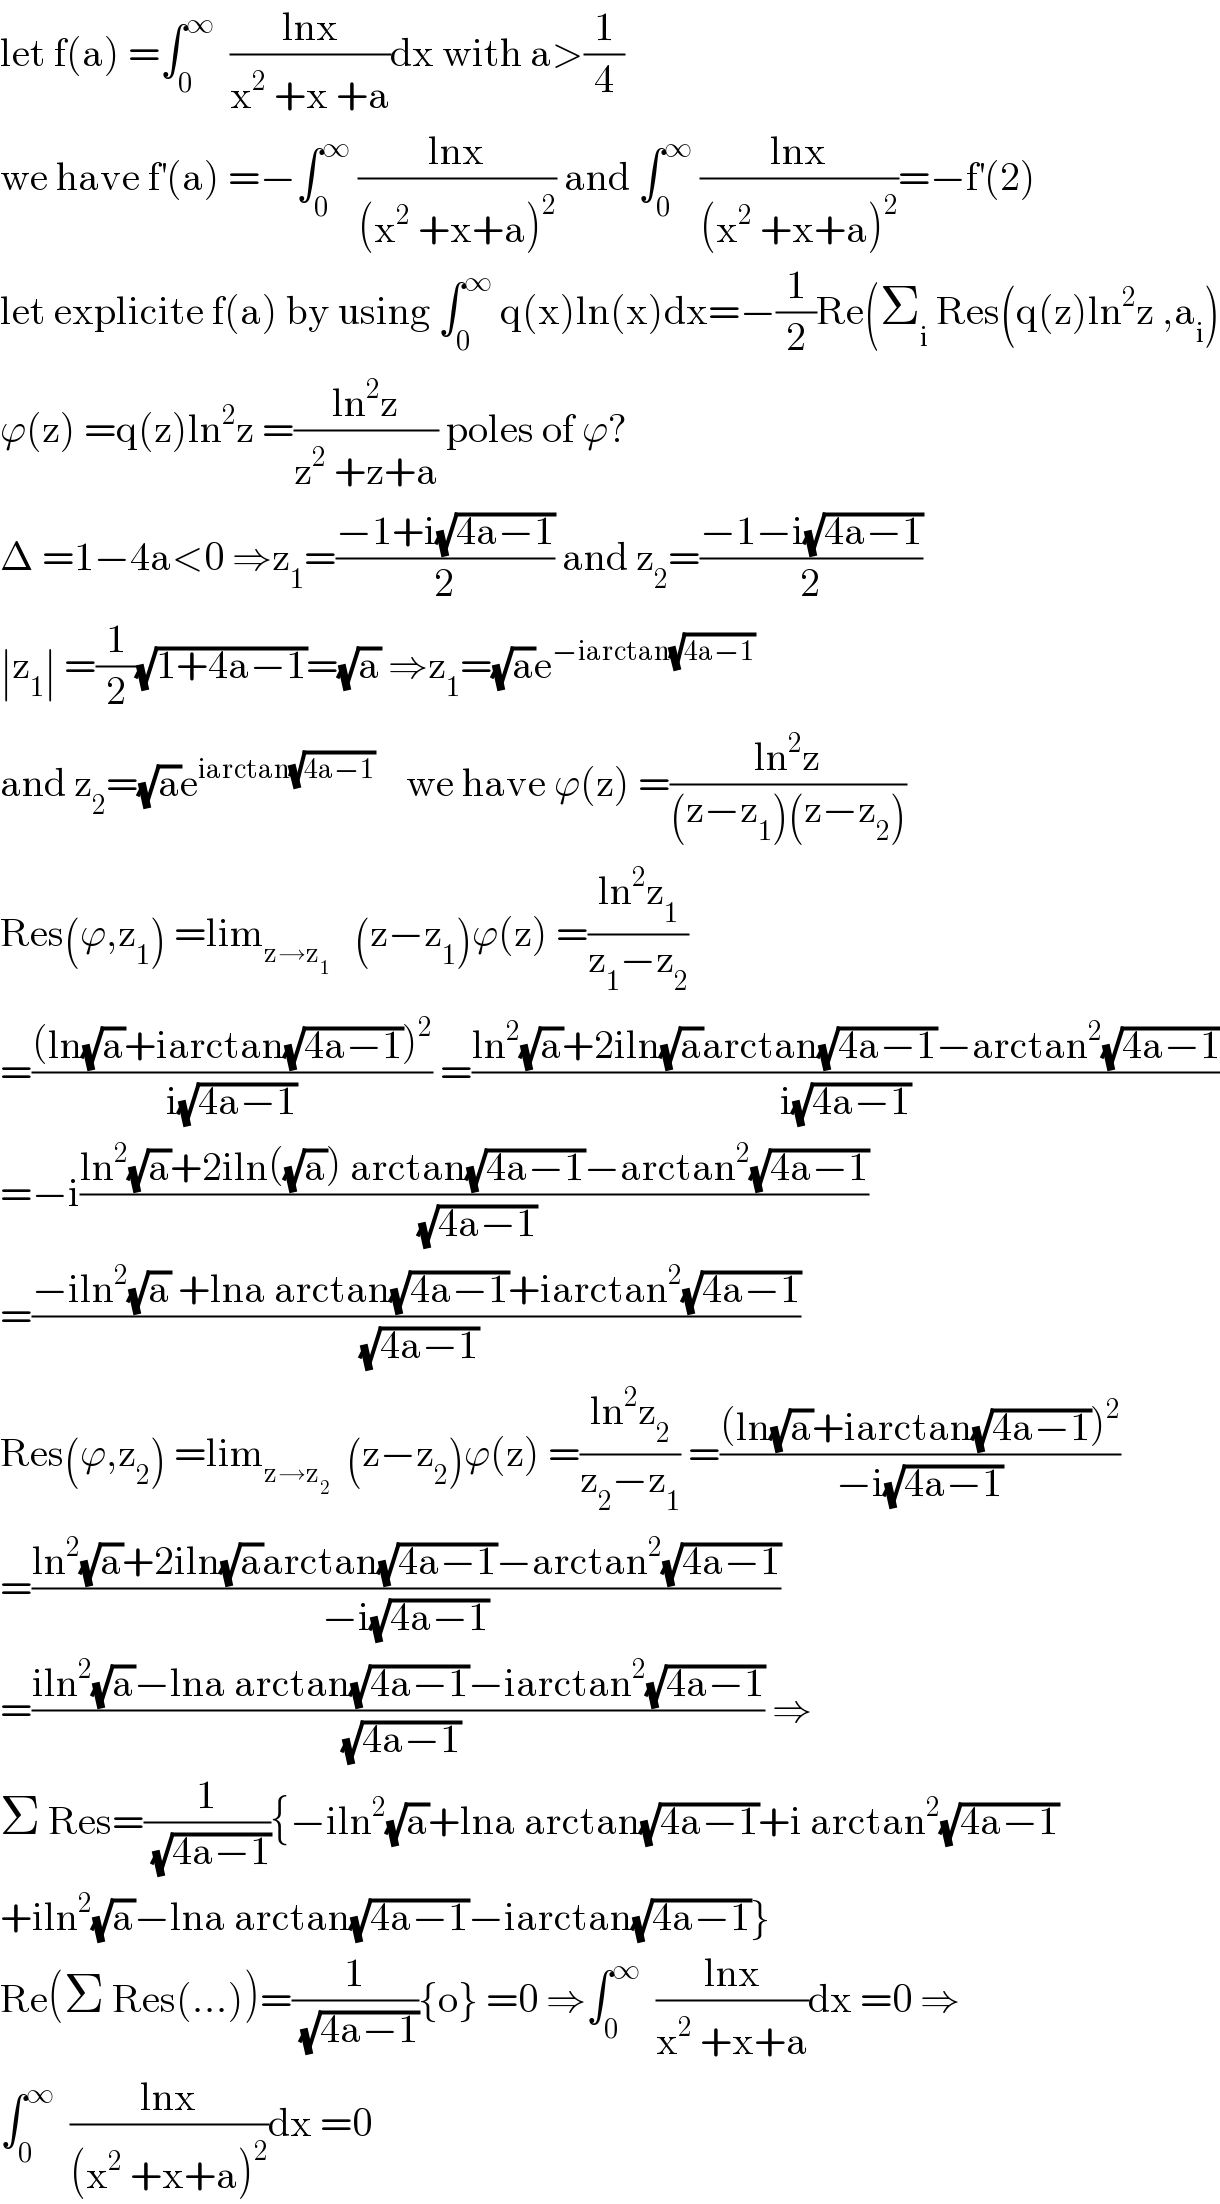 let f(a) =∫_0 ^∞   ((lnx)/(x^2  +x +a))dx with a>(1/4)  we have f^′ (a) =−∫_0 ^∞  ((lnx)/((x^2  +x+a)^2 )) and ∫_0 ^∞  ((lnx)/((x^2  +x+a)^2 ))=−f^′ (2)  let explicite f(a) by using ∫_0 ^∞  q(x)ln(x)dx=−(1/2)Re(Σ_i  Res(q(z)ln^2 z ,a_i )  ϕ(z) =q(z)ln^2 z =((ln^2 z)/(z^2  +z+a)) poles of ϕ?  Δ =1−4a<0 ⇒z_1 =((−1+i(√(4a−1)))/2) and z_2 =((−1−i(√(4a−1)))/2)  ∣z_1 ∣ =(1/2)(√(1+4a−1))=(√a) ⇒z_1 =(√a)e^(−iarctan(√(4a−1)))   and z_2 =(√a)e^(iarctan(√(4a−1)))     we have ϕ(z) =((ln^2 z)/((z−z_1 )(z−z_2 )))  Res(ϕ,z_1 ) =lim_(z→z_1 )    (z−z_1 )ϕ(z) =((ln^2 z_1 )/(z_1 −z_2 ))  =(((ln(√a)+iarctan(√(4a−1)))^2 )/(i(√(4a−1)))) =((ln^2 (√a)+2iln(√a)arctan(√(4a−1))−arctan^2 (√(4a−1)))/(i(√(4a−1))))  =−i((ln^2 (√a)+2iln((√a)) arctan(√(4a−1))−arctan^2 (√(4a−1)))/(√(4a−1)))  =((−iln^2 (√a) +lna arctan(√(4a−1))+iarctan^2 (√(4a−1)))/(√(4a−1)))  Res(ϕ,z_2 ) =lim_(z→z_2 )   (z−z_2 )ϕ(z) =((ln^2 z_2 )/(z_2 −z_1 )) =(((ln(√a)+iarctan(√(4a−1)))^2 )/(−i(√(4a−1))))  =((ln^2 (√a)+2iln(√a)arctan(√(4a−1))−arctan^2 (√(4a−1)))/(−i(√(4a−1))))  =((iln^2 (√a)−lna arctan(√(4a−1))−iarctan^2 (√(4a−1)))/(√(4a−1))) ⇒  Σ Res=(1/(√(4a−1))){−iln^2 (√a)+lna arctan(√(4a−1))+i arctan^2 (√(4a−1))  +iln^2 (√a)−lna arctan(√(4a−1))−iarctan(√(4a−1))}  Re(Σ Res(...))=(1/(√(4a−1))){o} =0 ⇒∫_0 ^∞   ((lnx)/(x^2  +x+a))dx =0 ⇒  ∫_0 ^∞   ((lnx)/((x^2  +x+a)^2 ))dx =0  